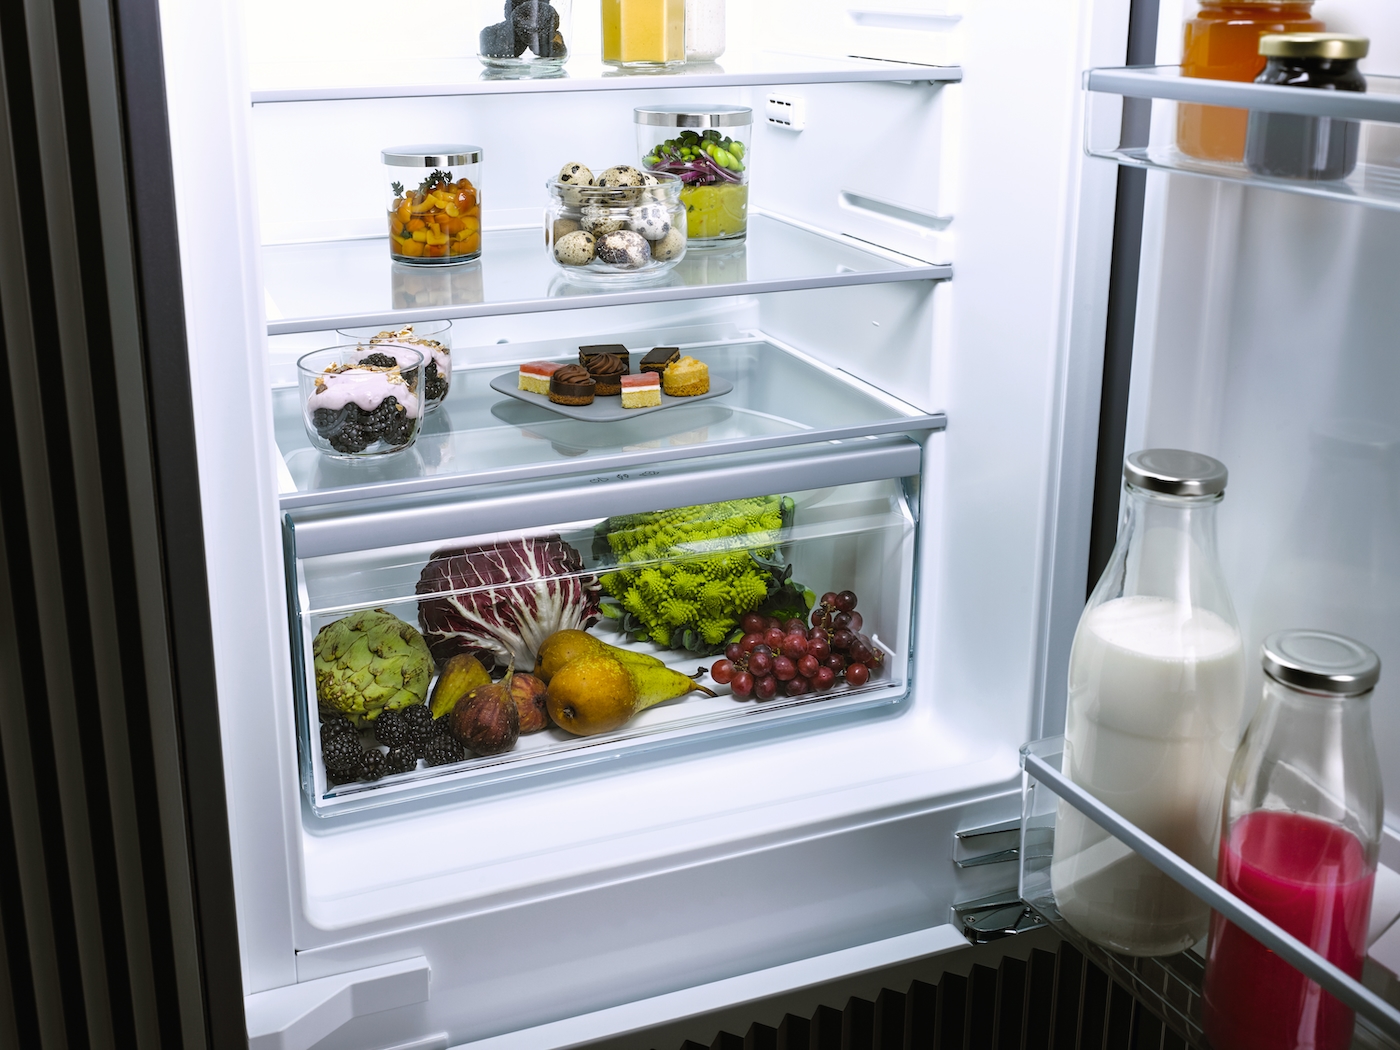 Iebūvējams ledusskapis ar automātisko intensīvo dzesēšanu, 87 cm augstums (K 7113 D) product photo Laydowns Back View ZOOM